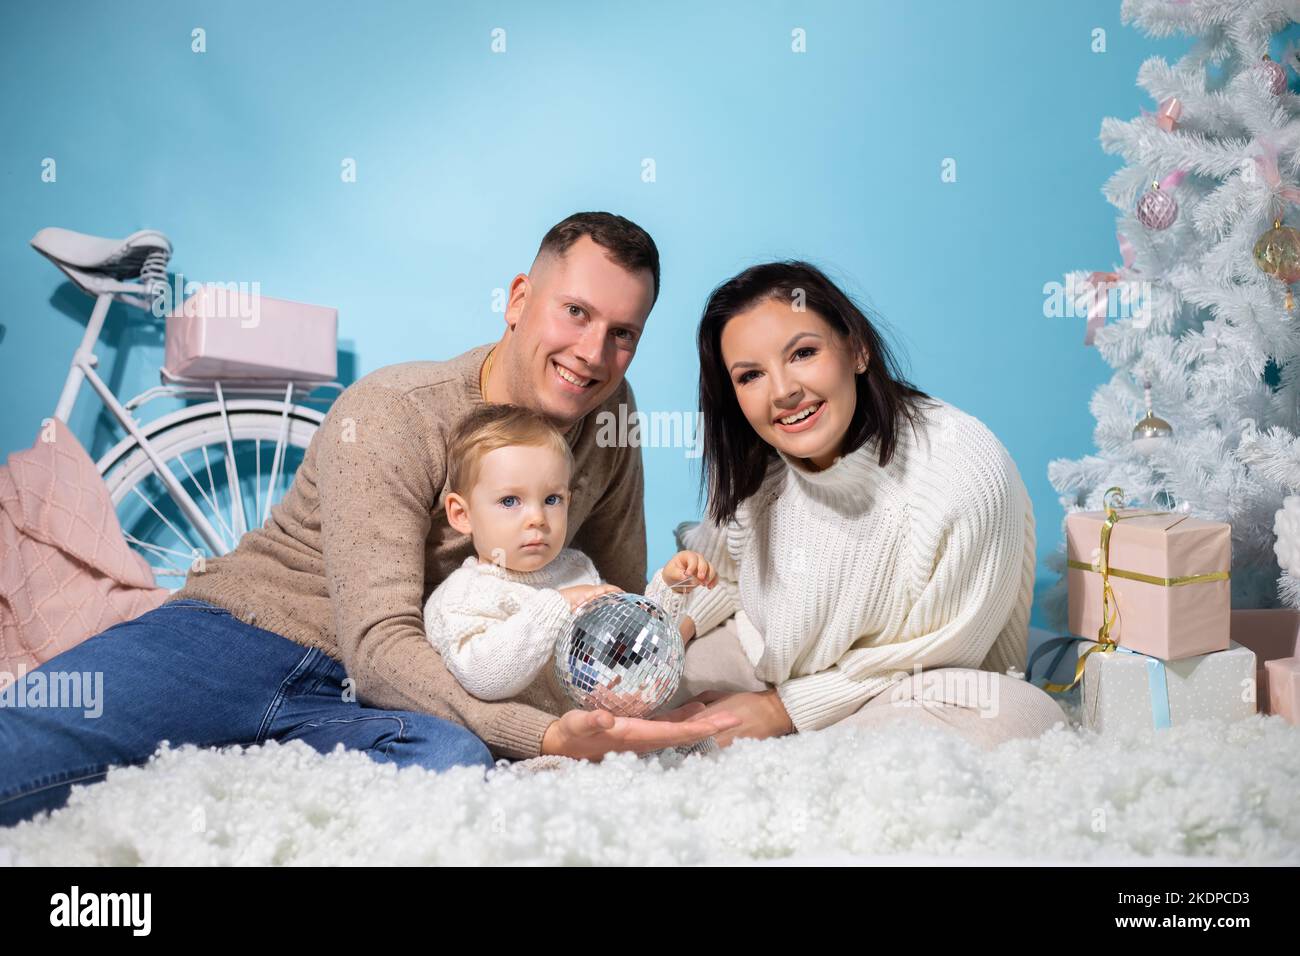 Familienportrait von drei Personen, die zusammen in einem weihnachtlichen Drehort mit weißen Dekorationen auf blauem Hintergrund sitzen. Glückliche Mutter, Vater und Stockfoto